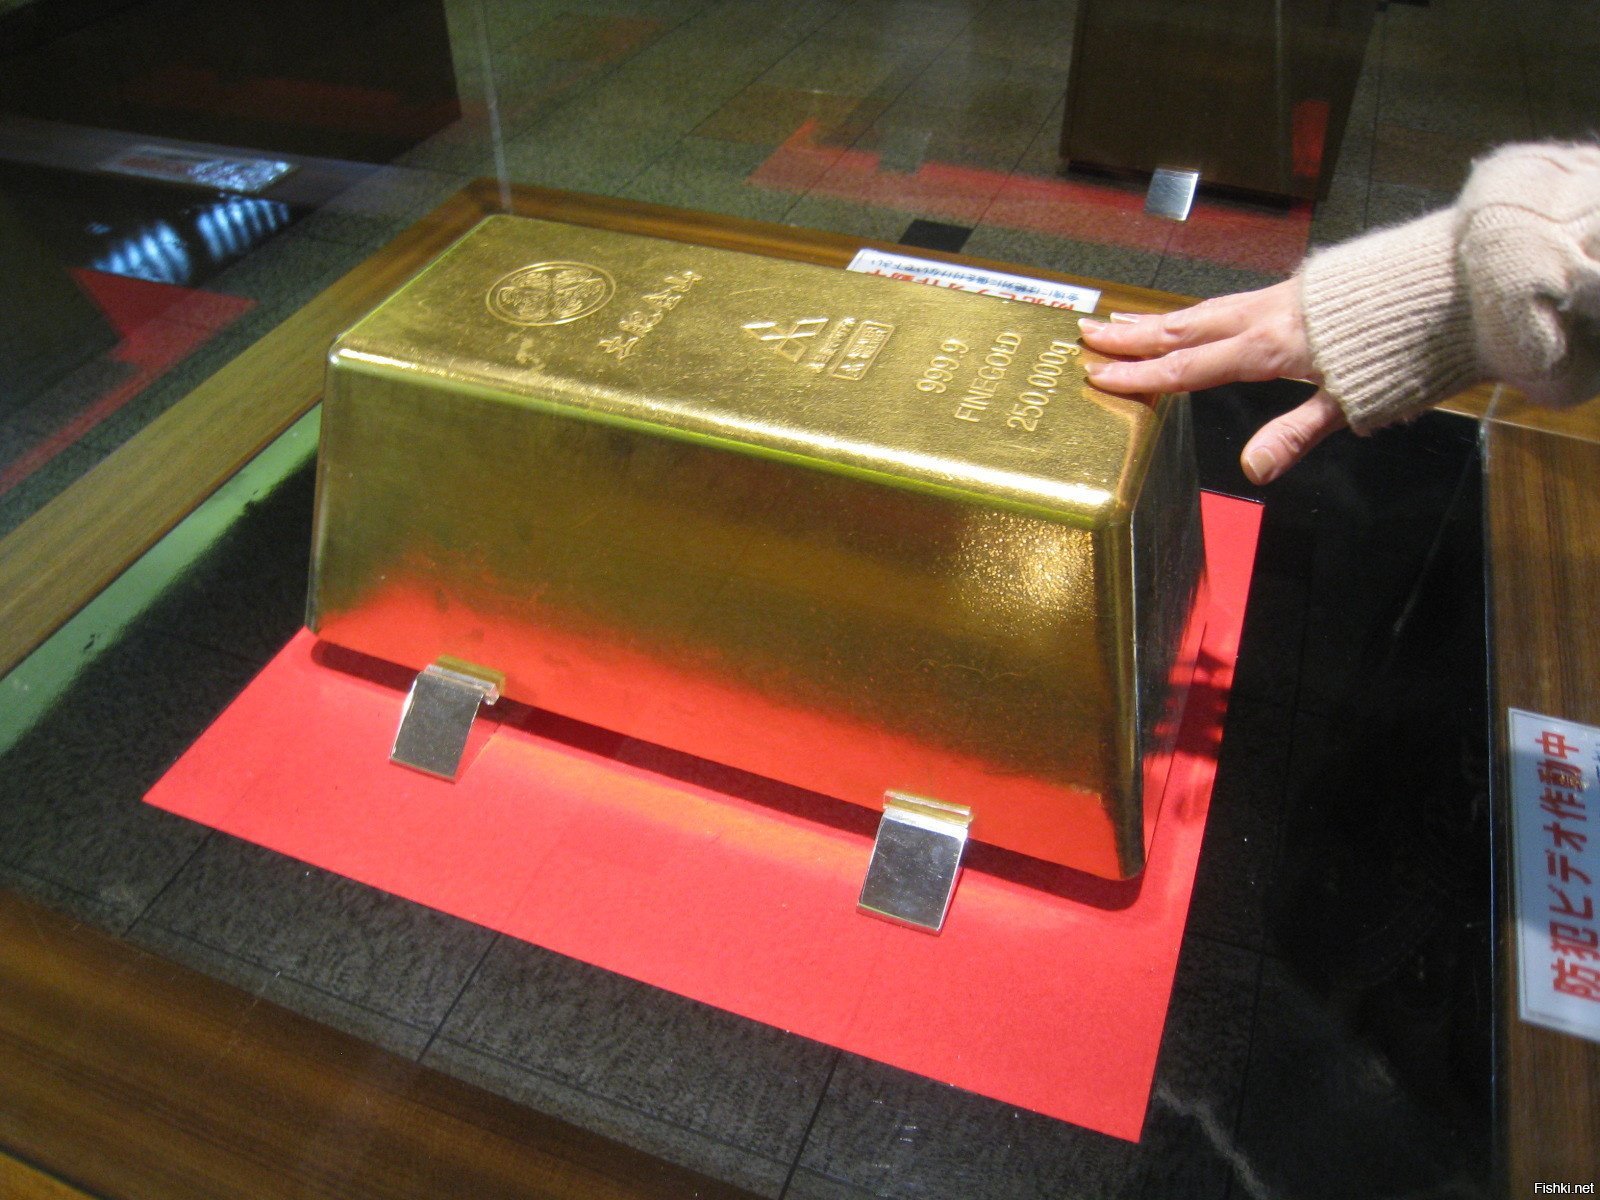 1 2 кг золота. Слиток золота 250 килограмм. Самый большой слиток золота в мире. Слиток золота 12 кг. Самый большой слиток золота в мире с весом 250.